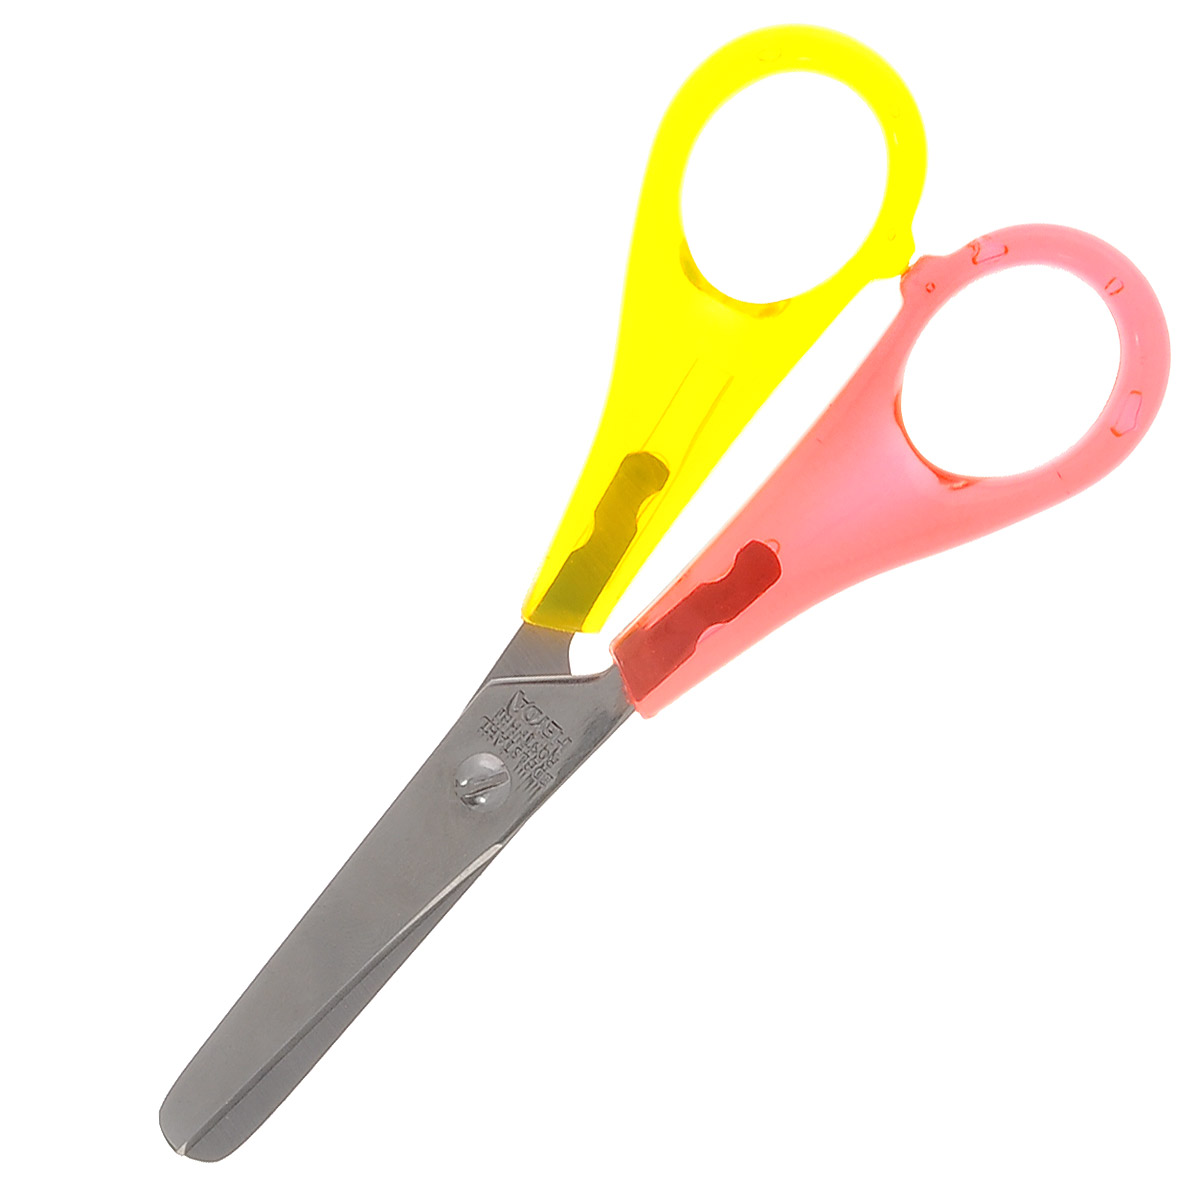 Heyda Ножницы для левши, цвет: желтый, розовый, 13 см